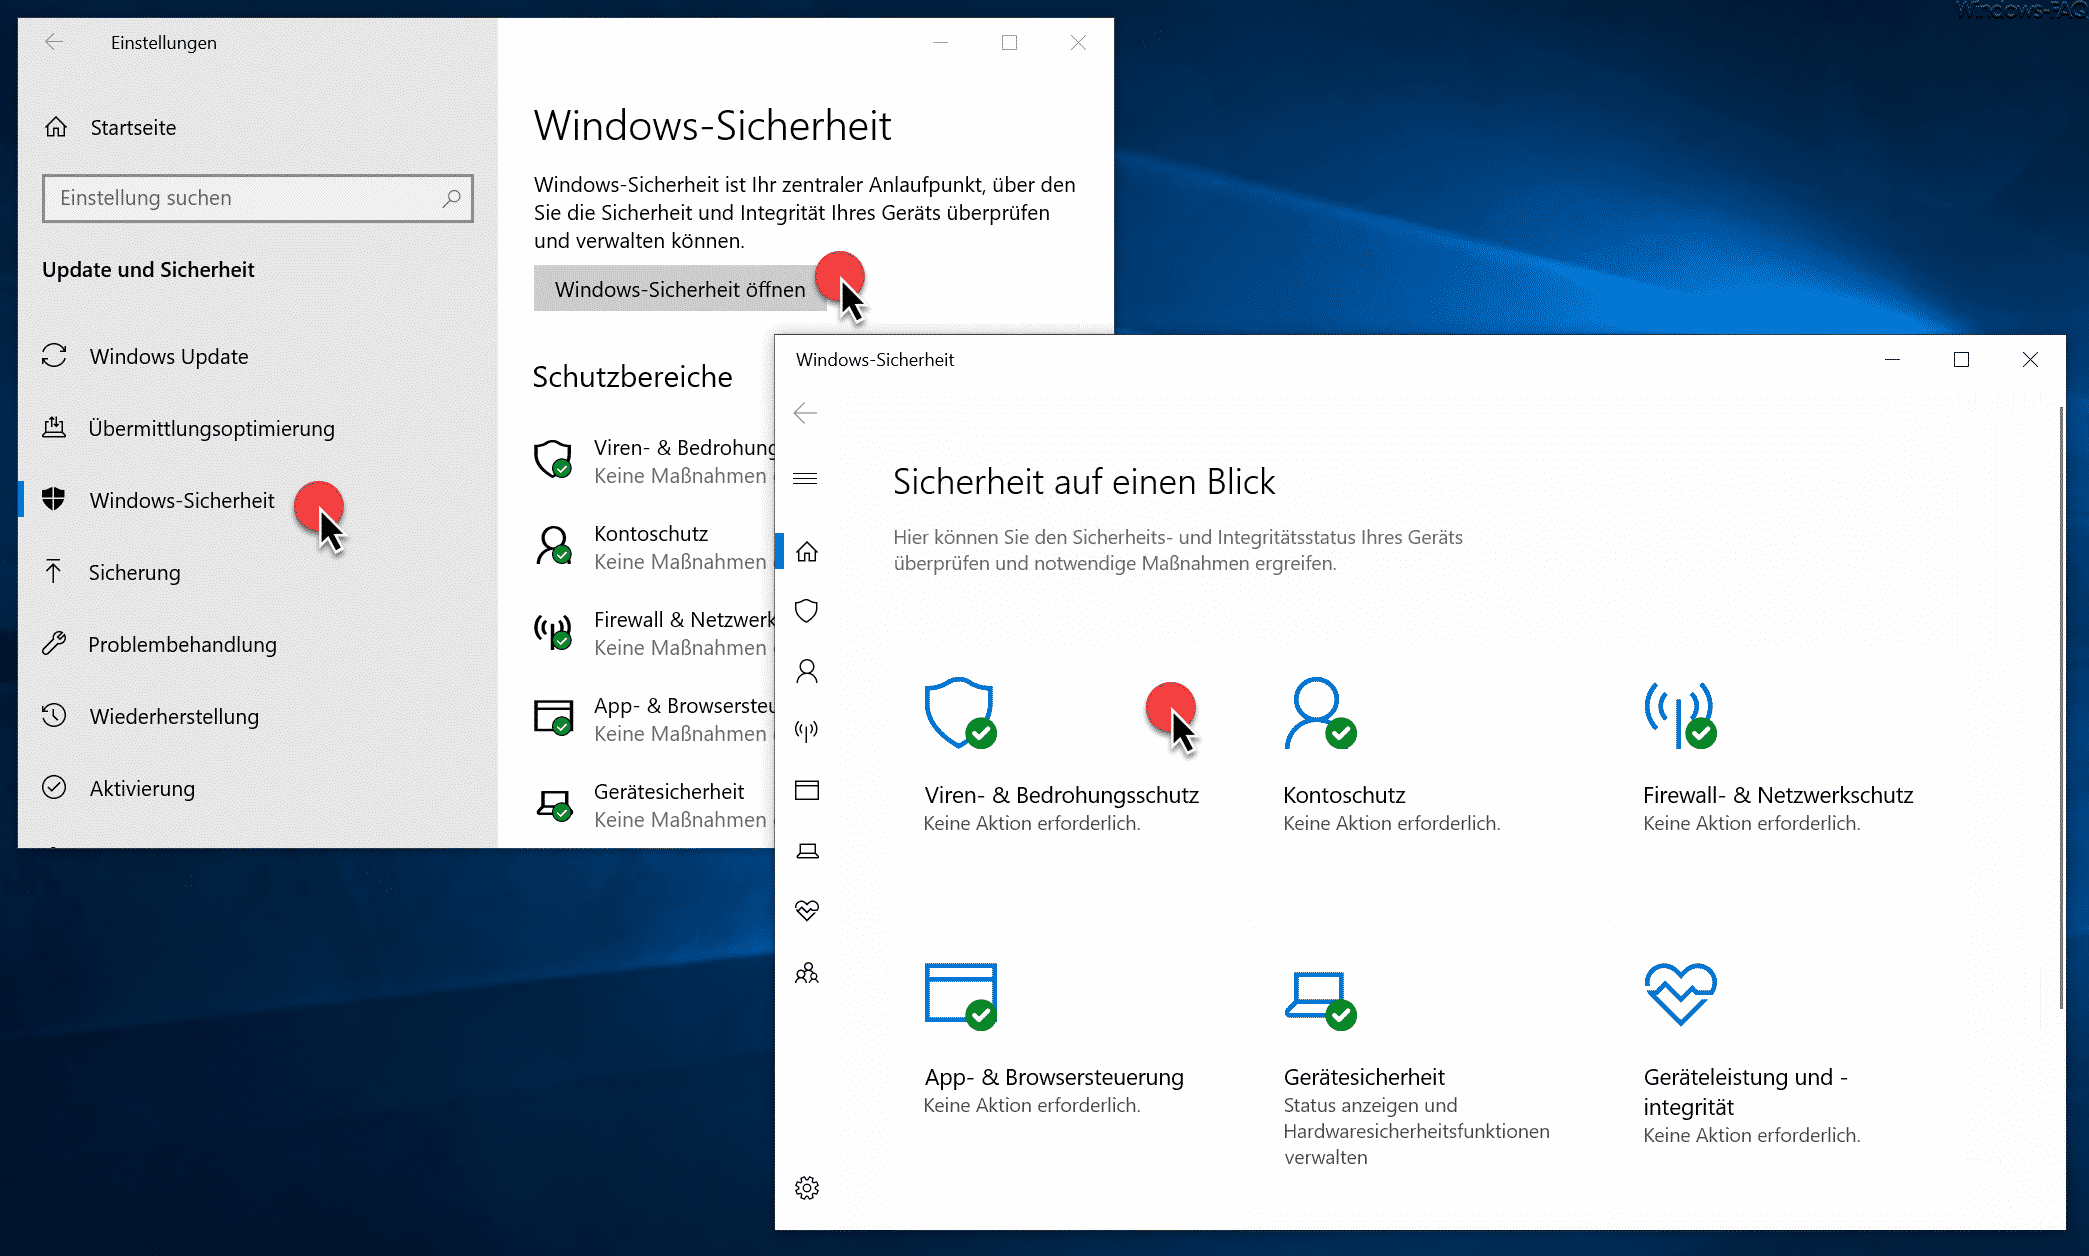 Windows-Sicherheit - Sicherheit auf einen Blick